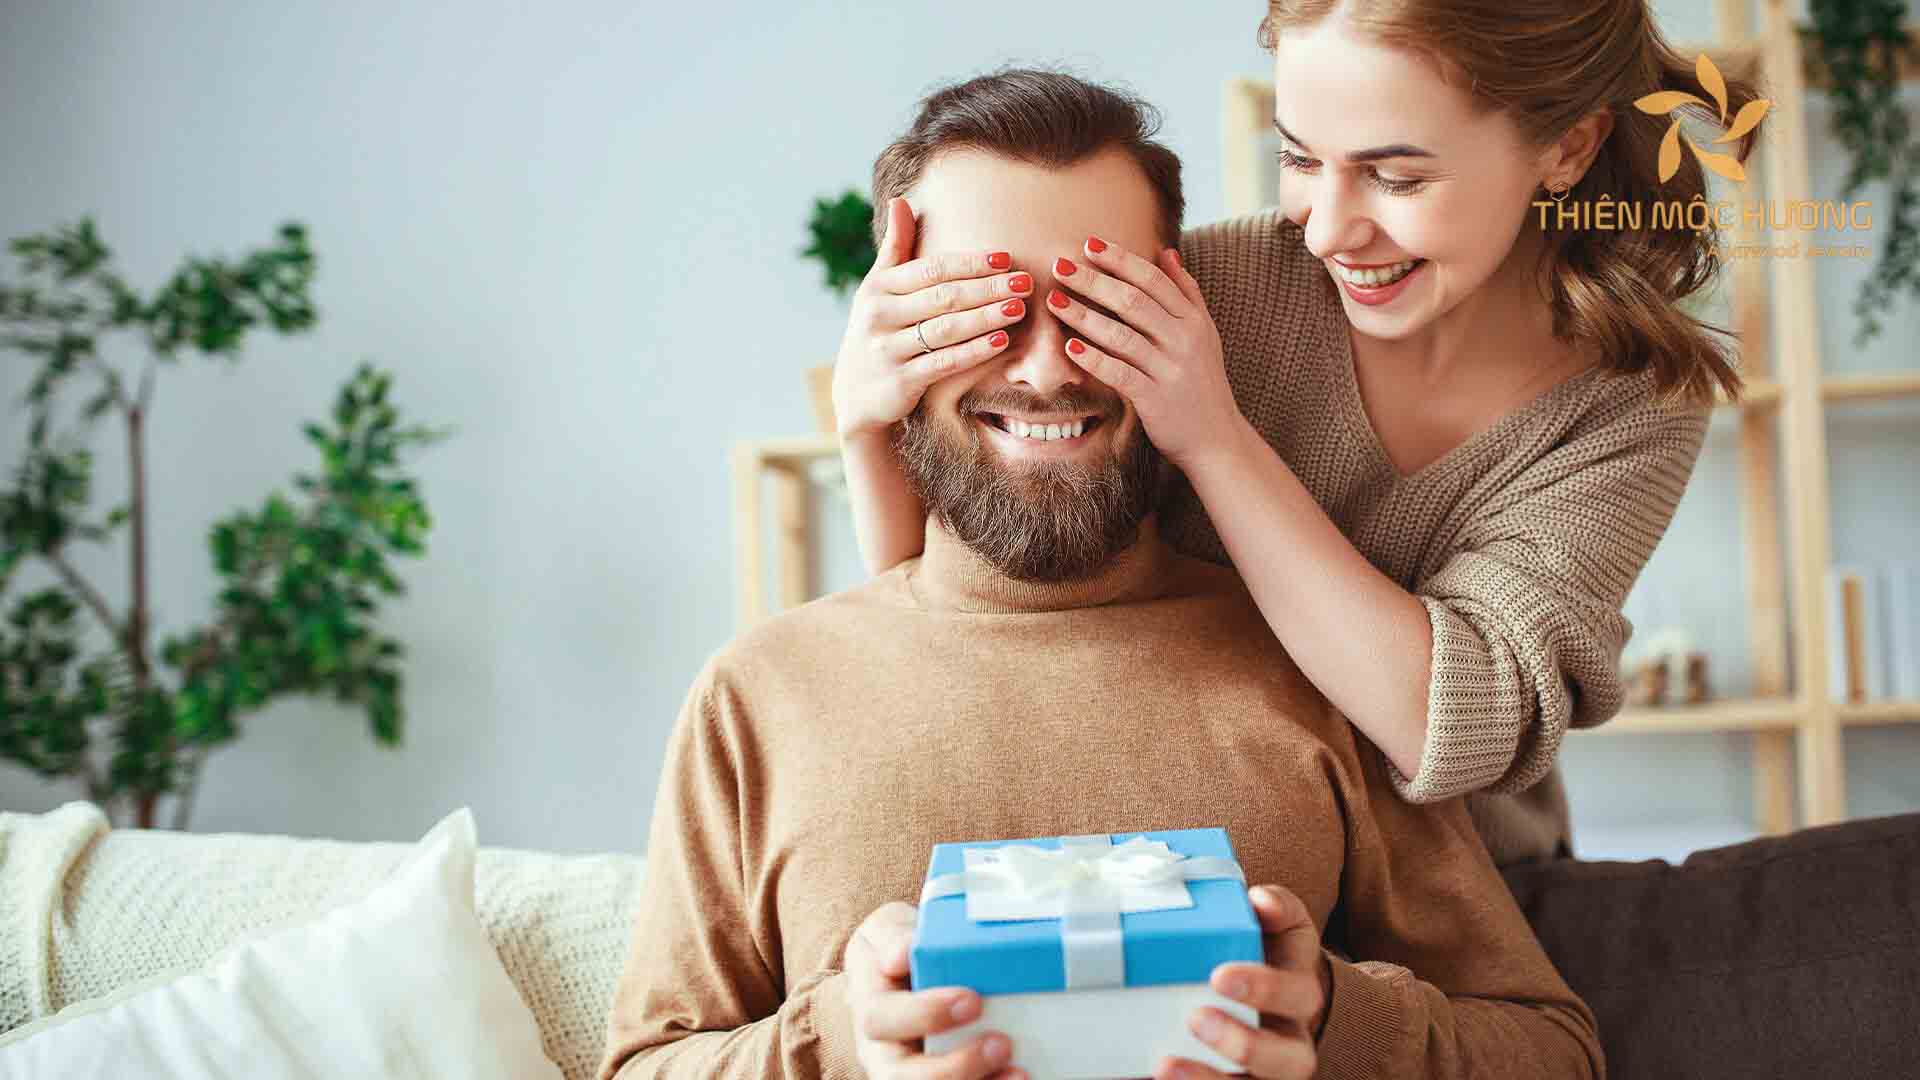 Các dịp được cho là rất phù hợp để mua quà tặng chồng bất ngờ và ý nghĩa